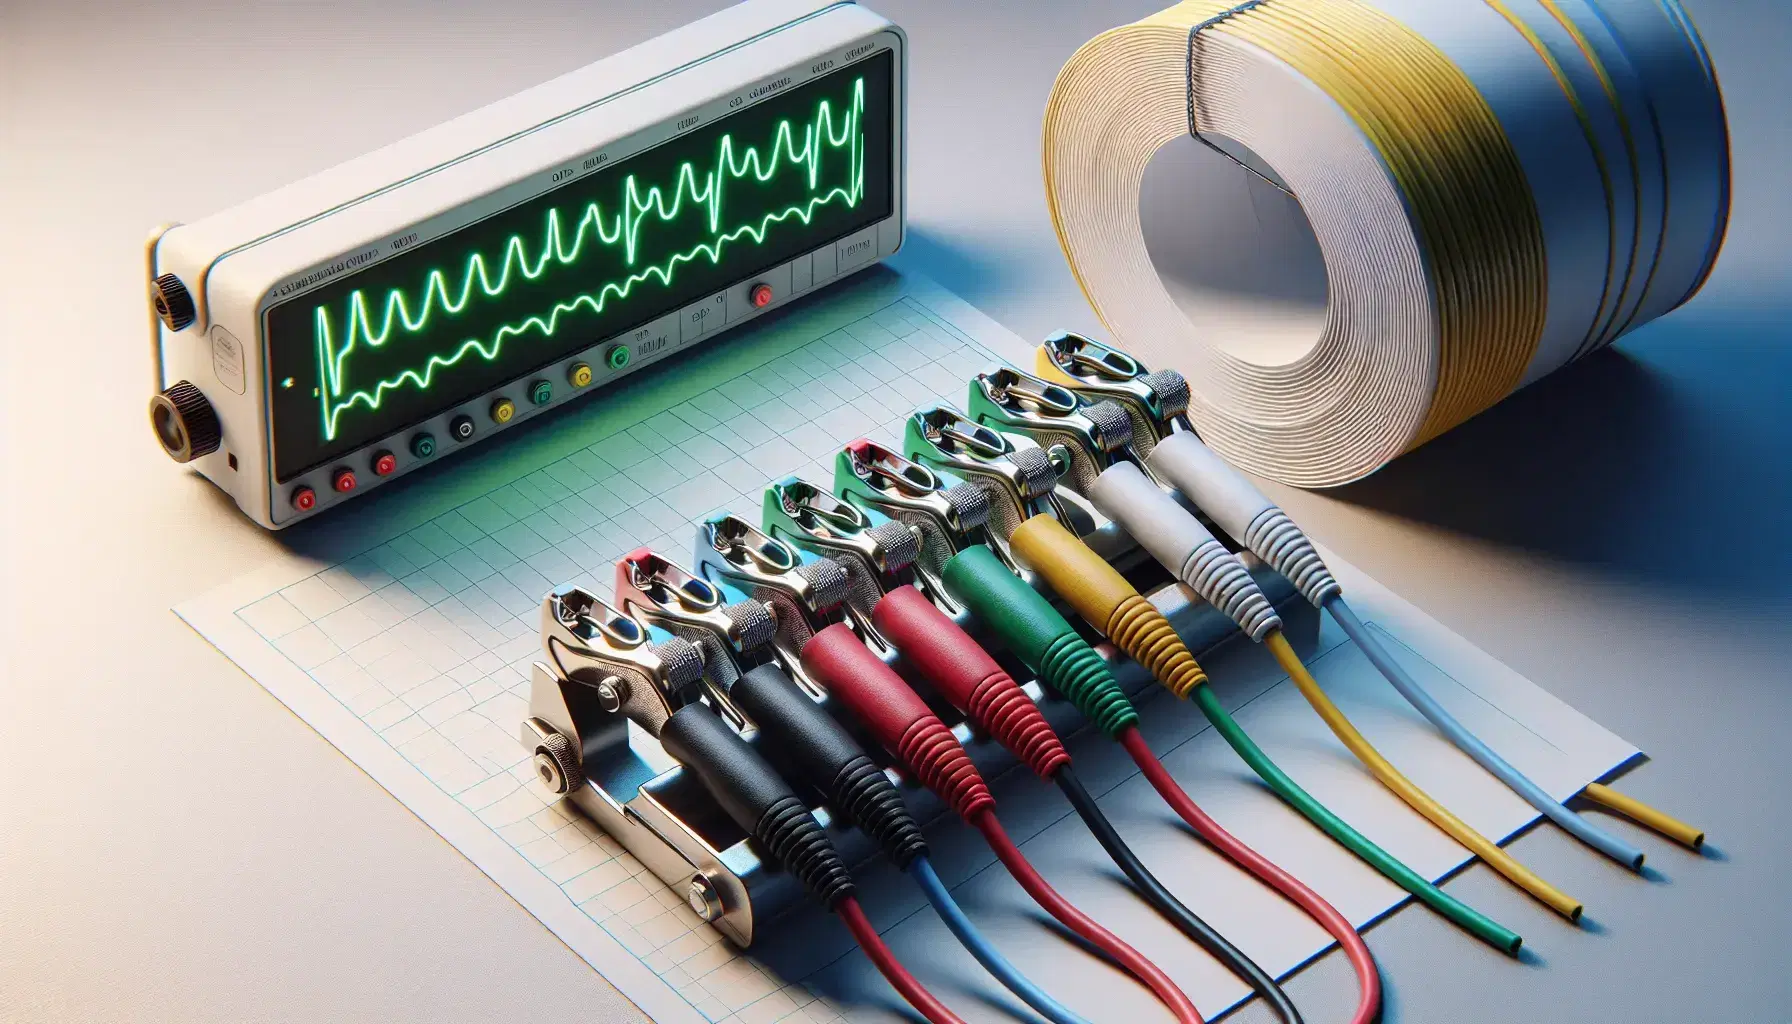 Cables de colores con pinzas metálicas sobre superficie clara y dispositivo médico con pantalla de líneas onduladas verdes al fondo.